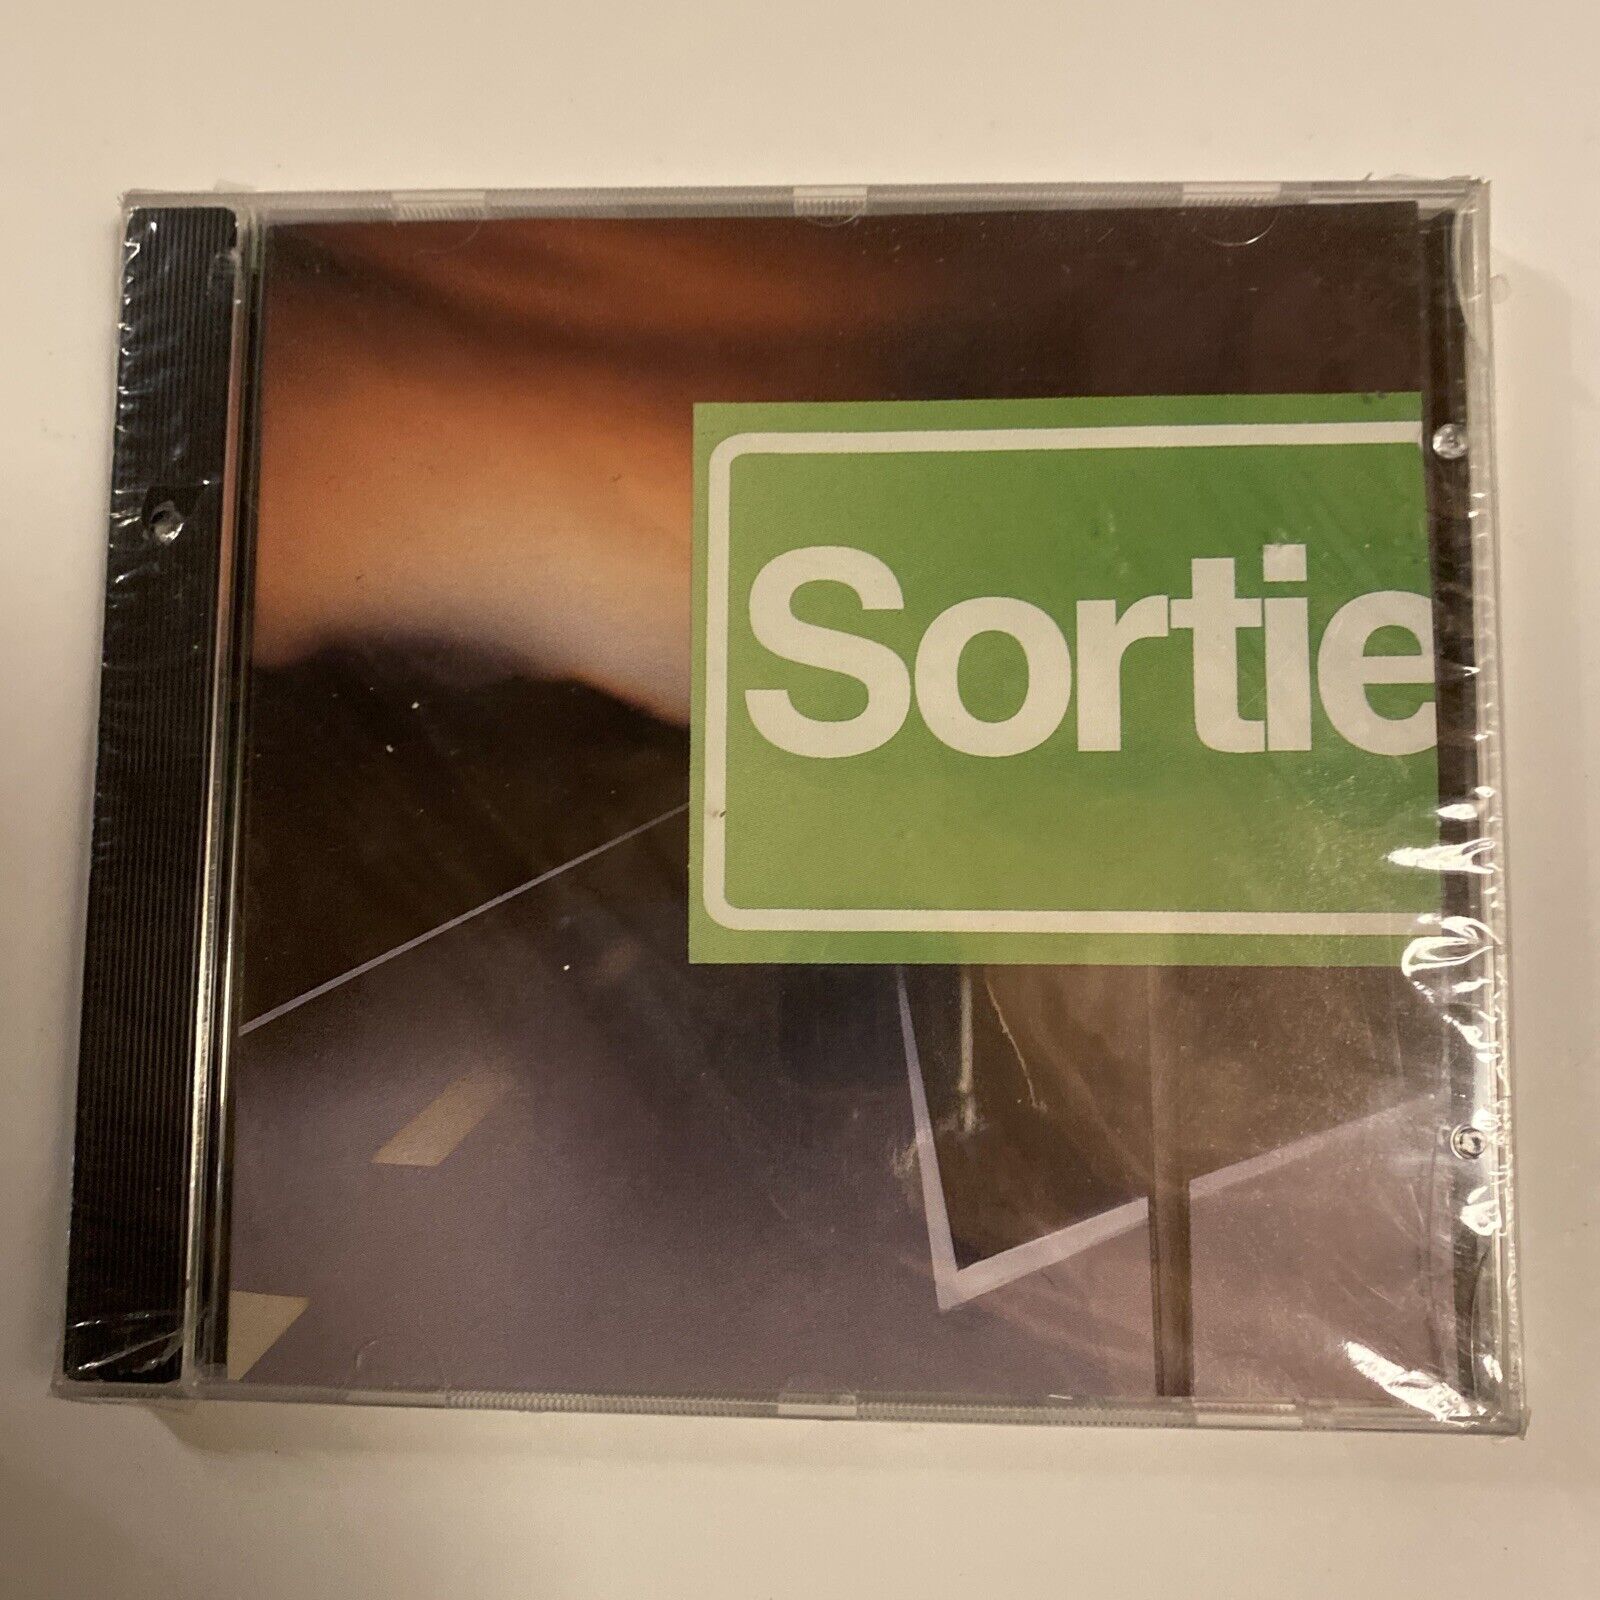 Sortie by Sortie (CD, 1995)